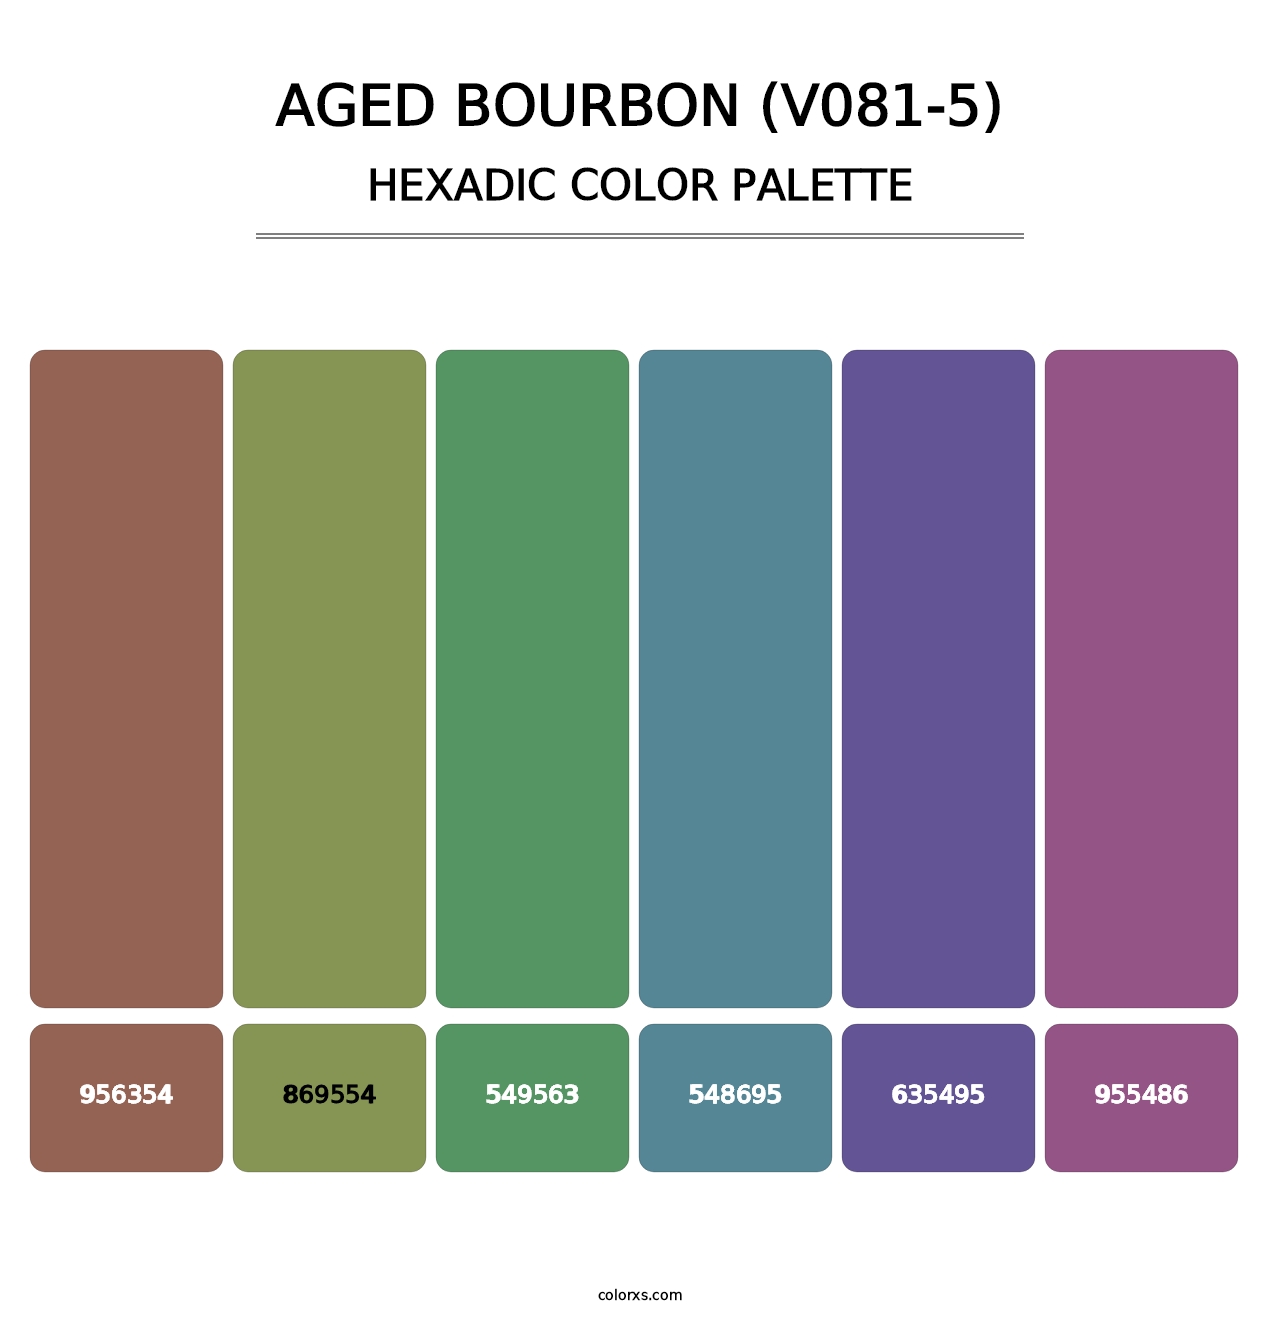 Aged Bourbon (V081-5) - Hexadic Color Palette